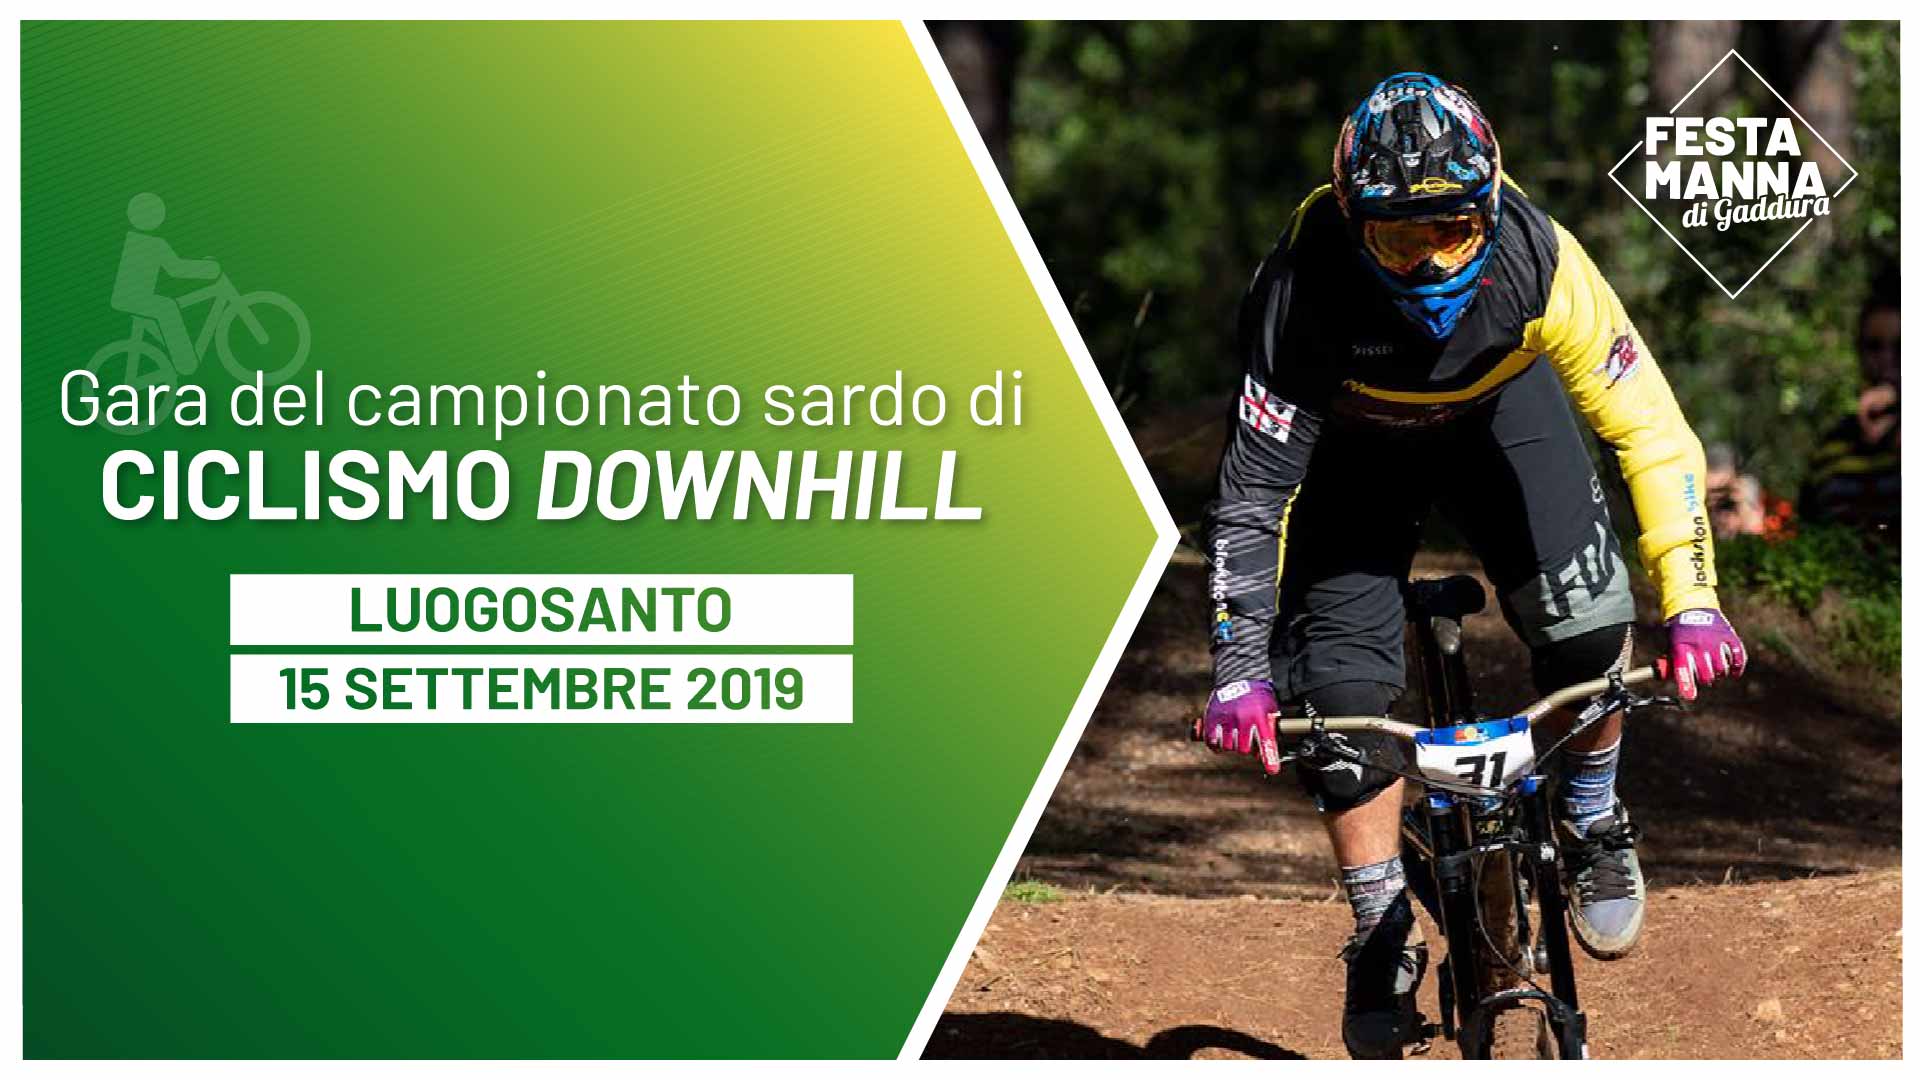 Campionato sardo di ciclismo downhill | Festa Manna di Gaddura 2019